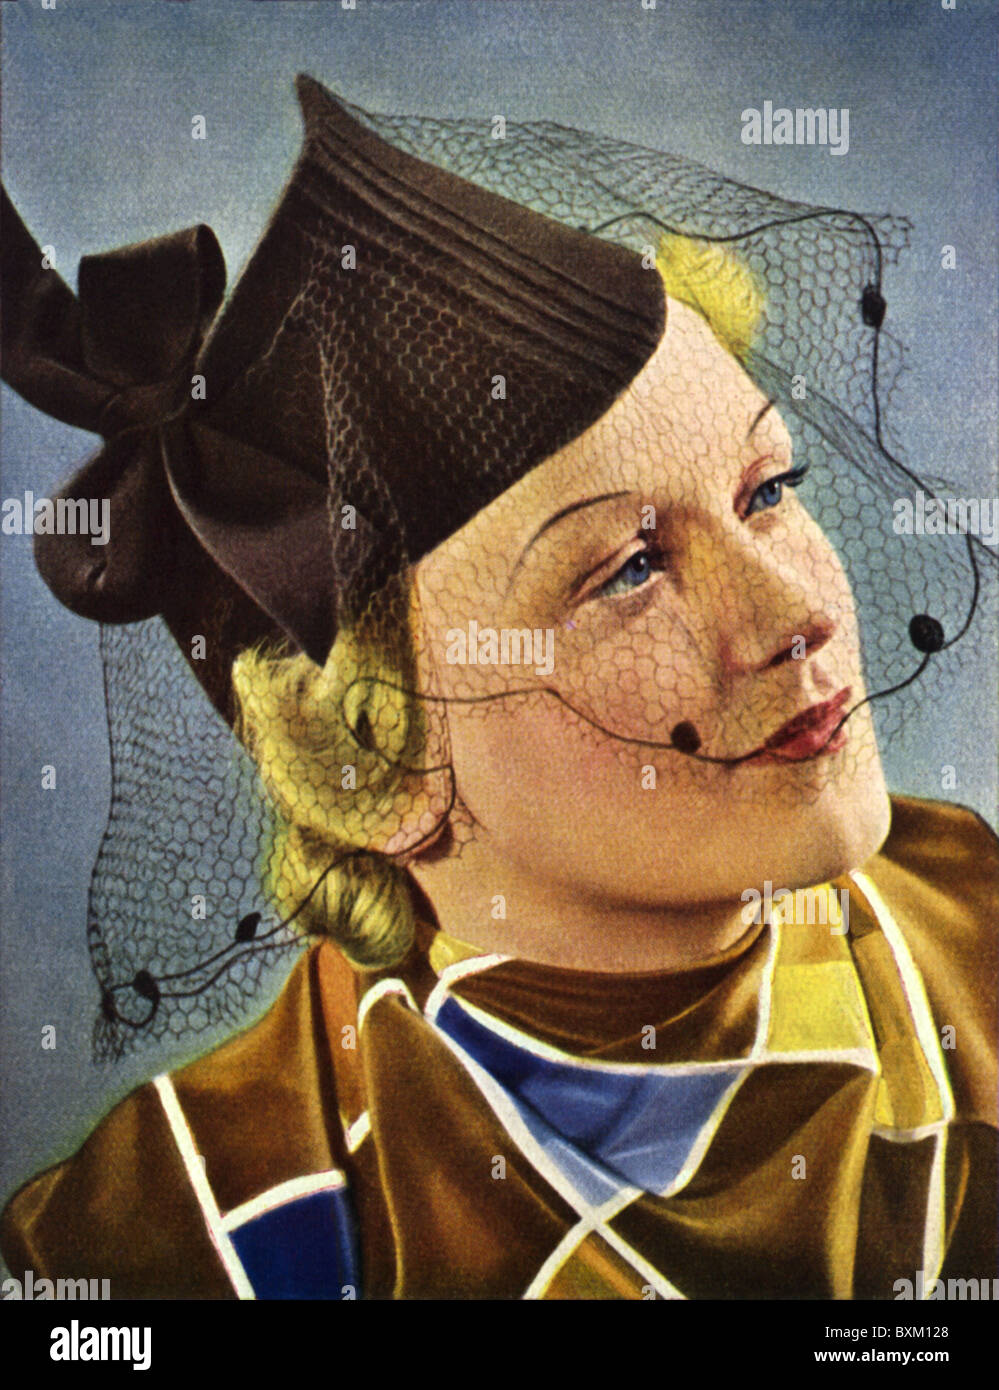 1930er jahre mode frauen -Fotos und -Bildmaterial in hoher Auflösung – Alamy